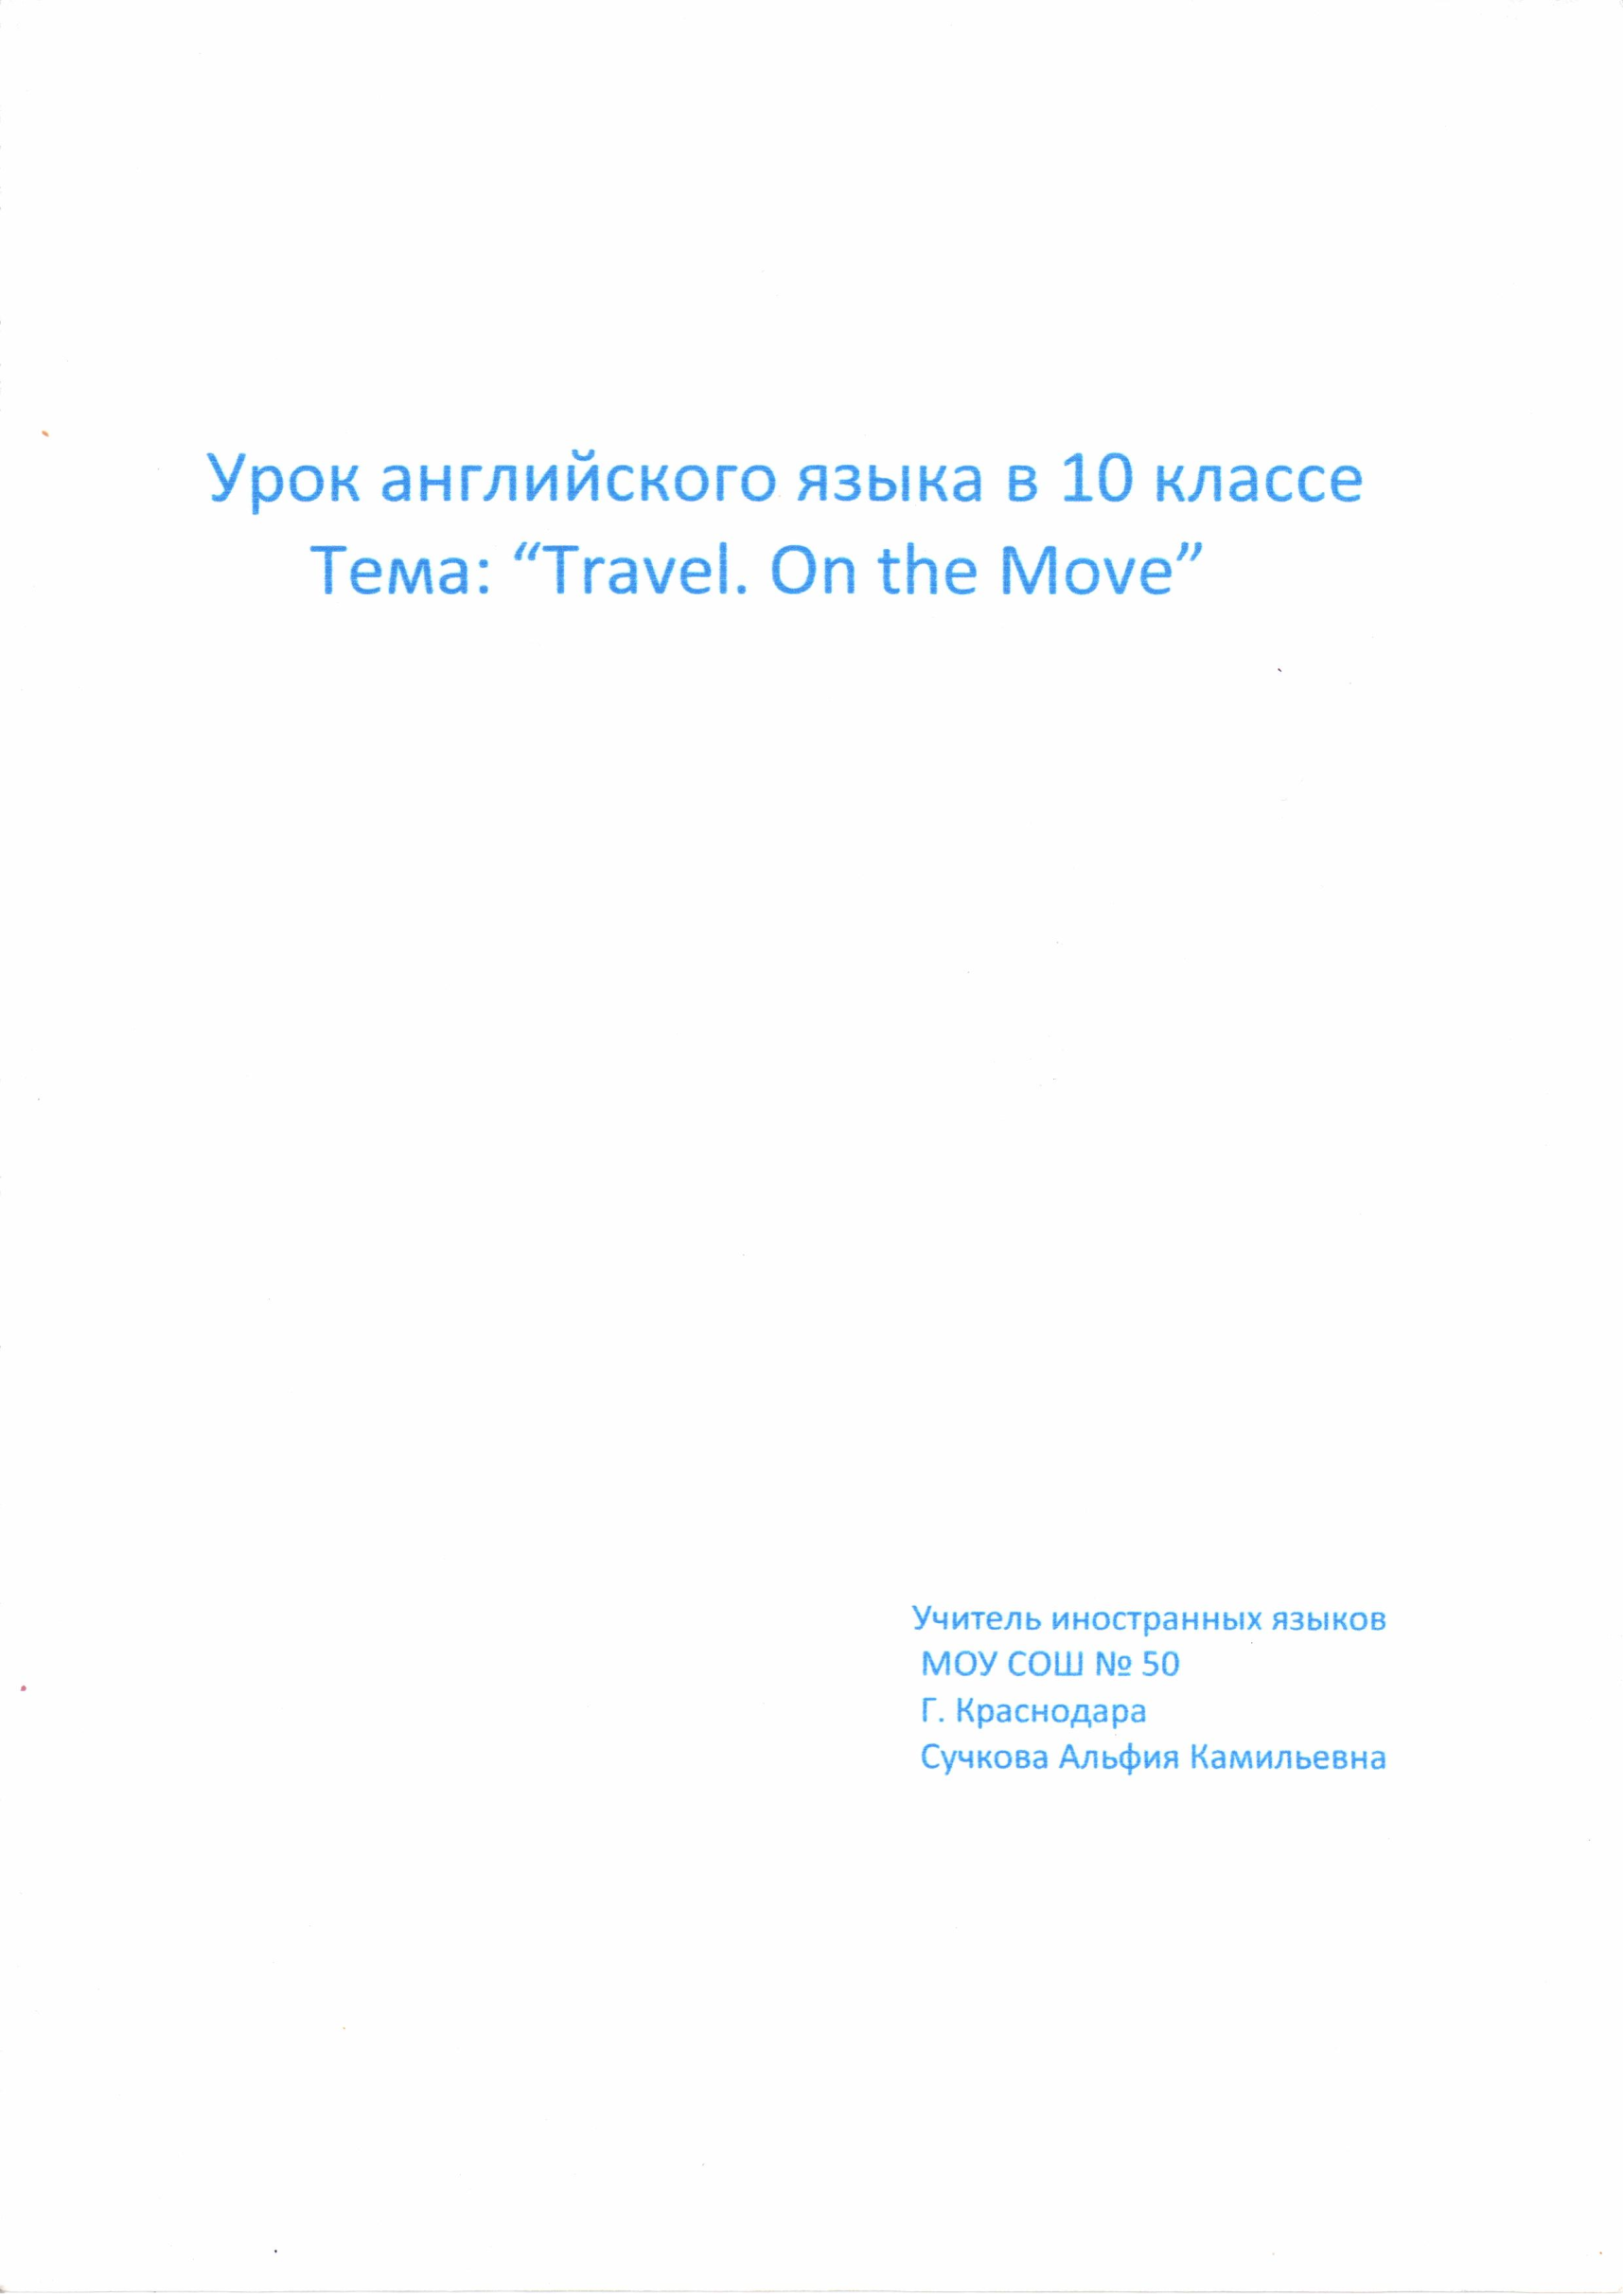 Урок английского языка.Тема:Travel.On the Move(10 класс)